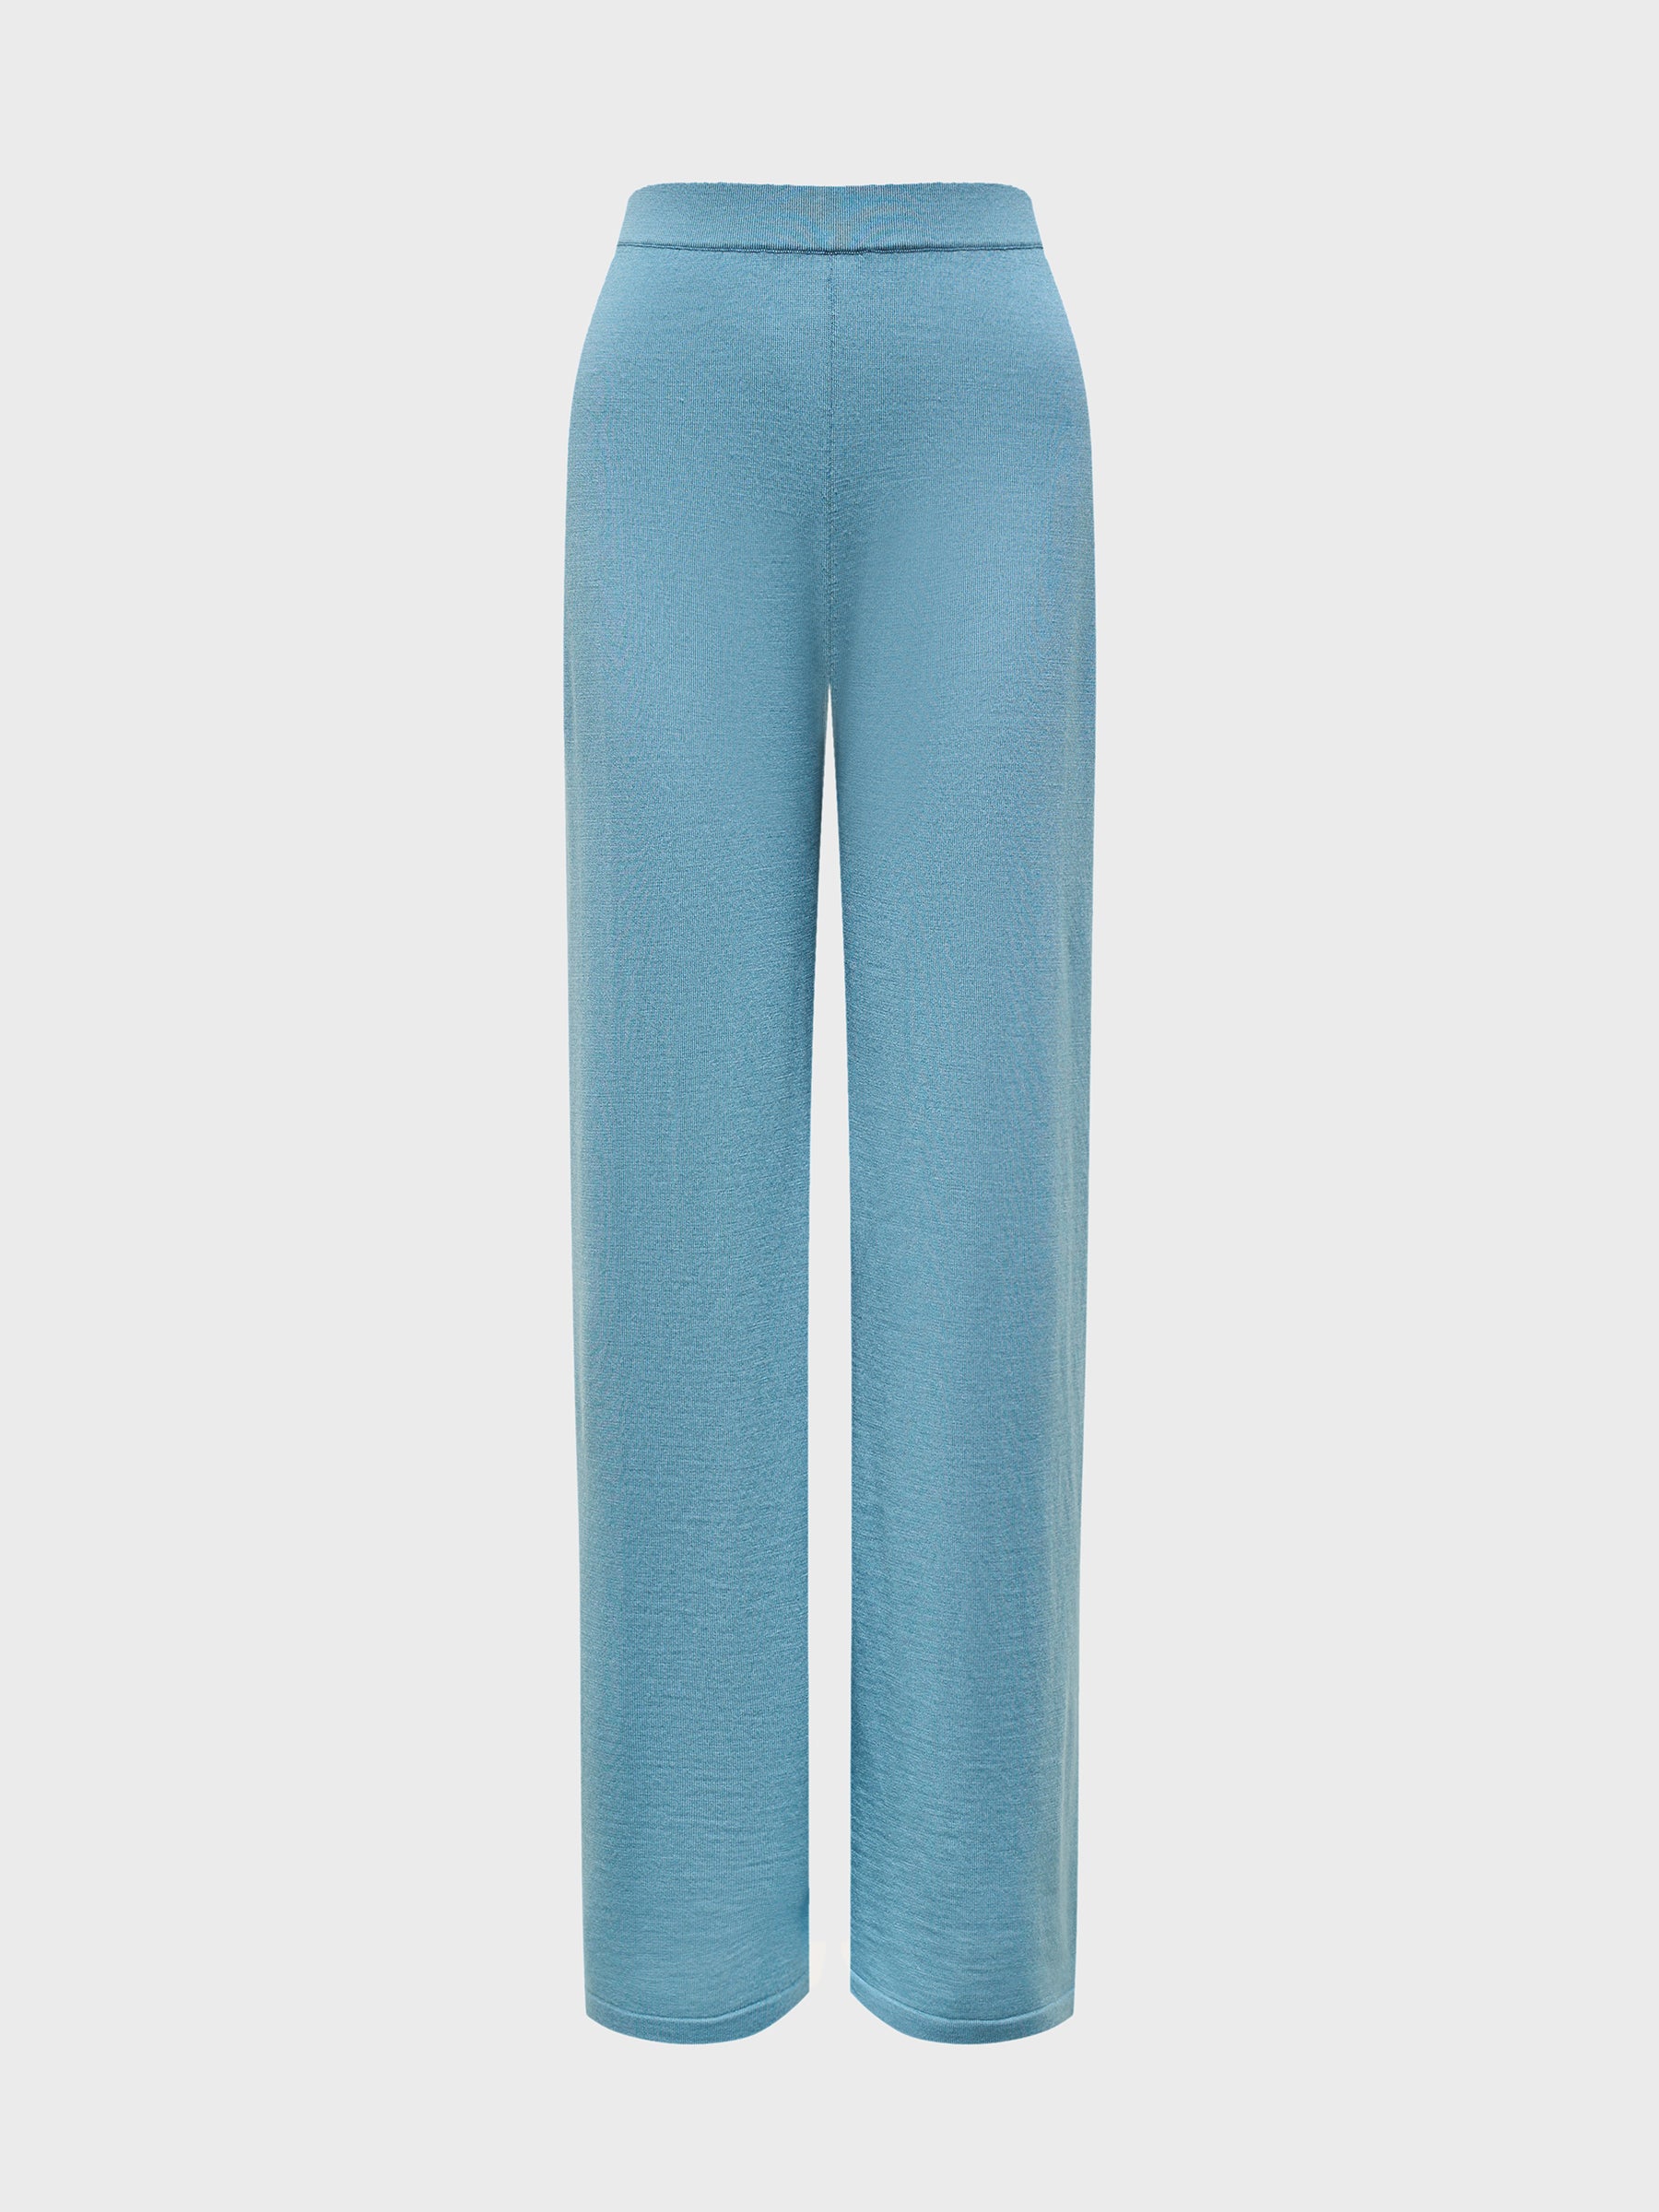 Merino-silk trousers